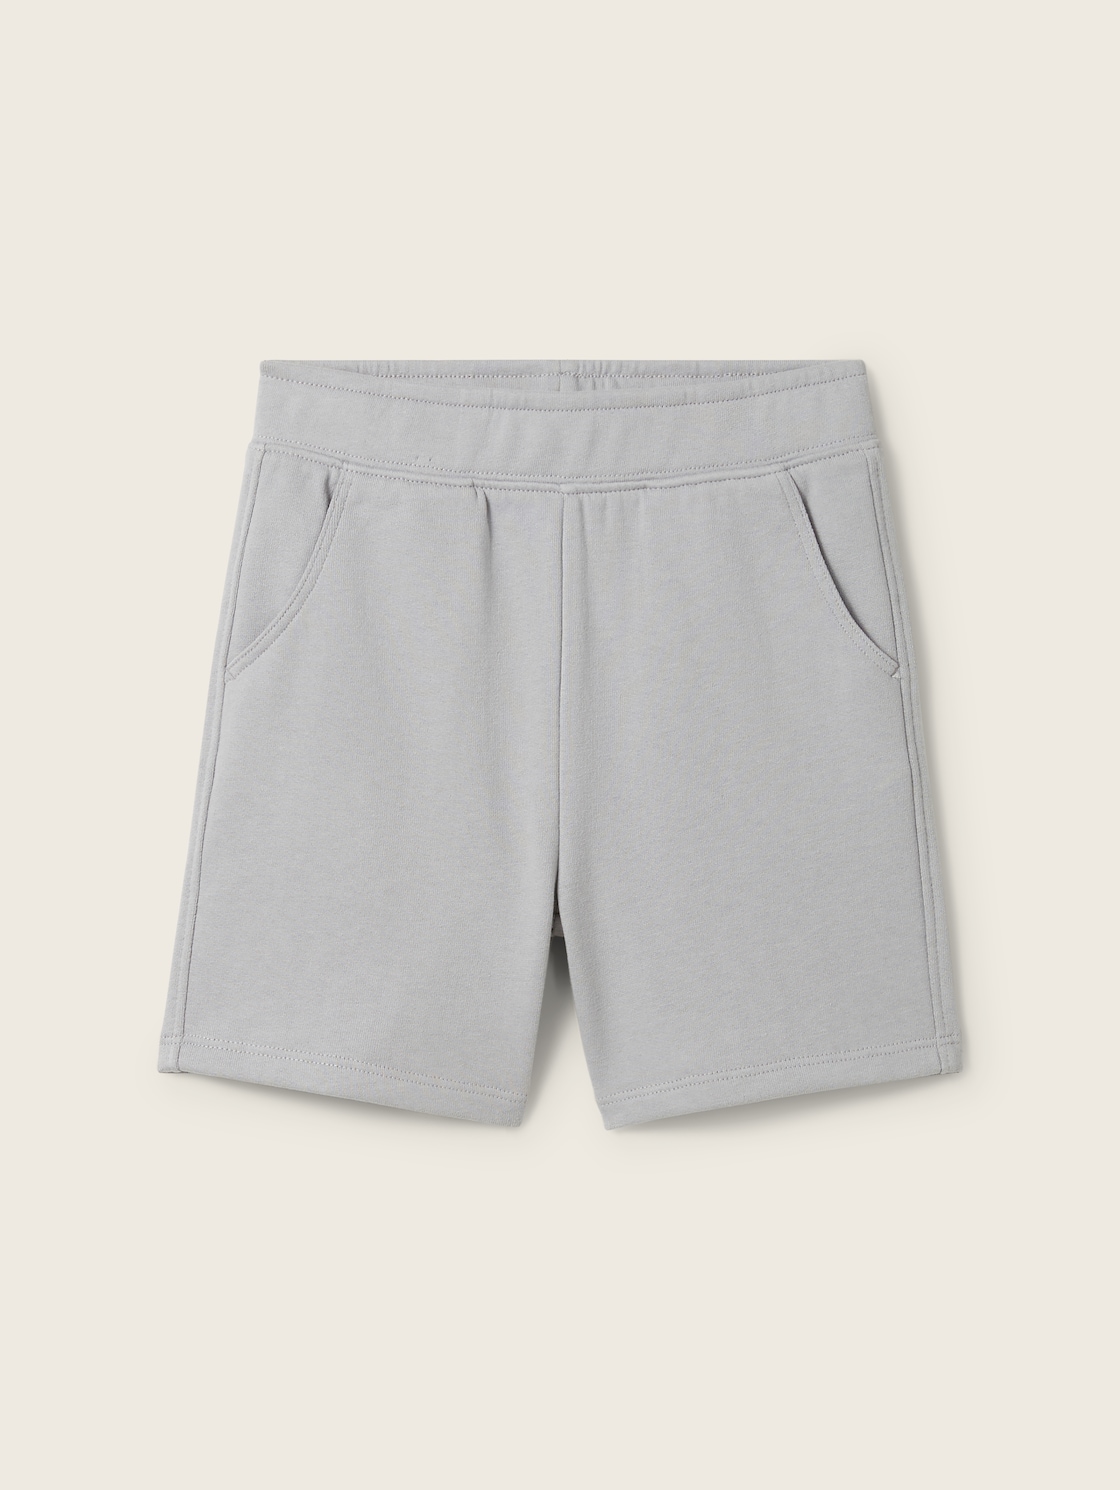 TOM TAILOR Jungen Basic Sweat Shorts, grau, Uni, Gr. 92/98 von Tom Tailor